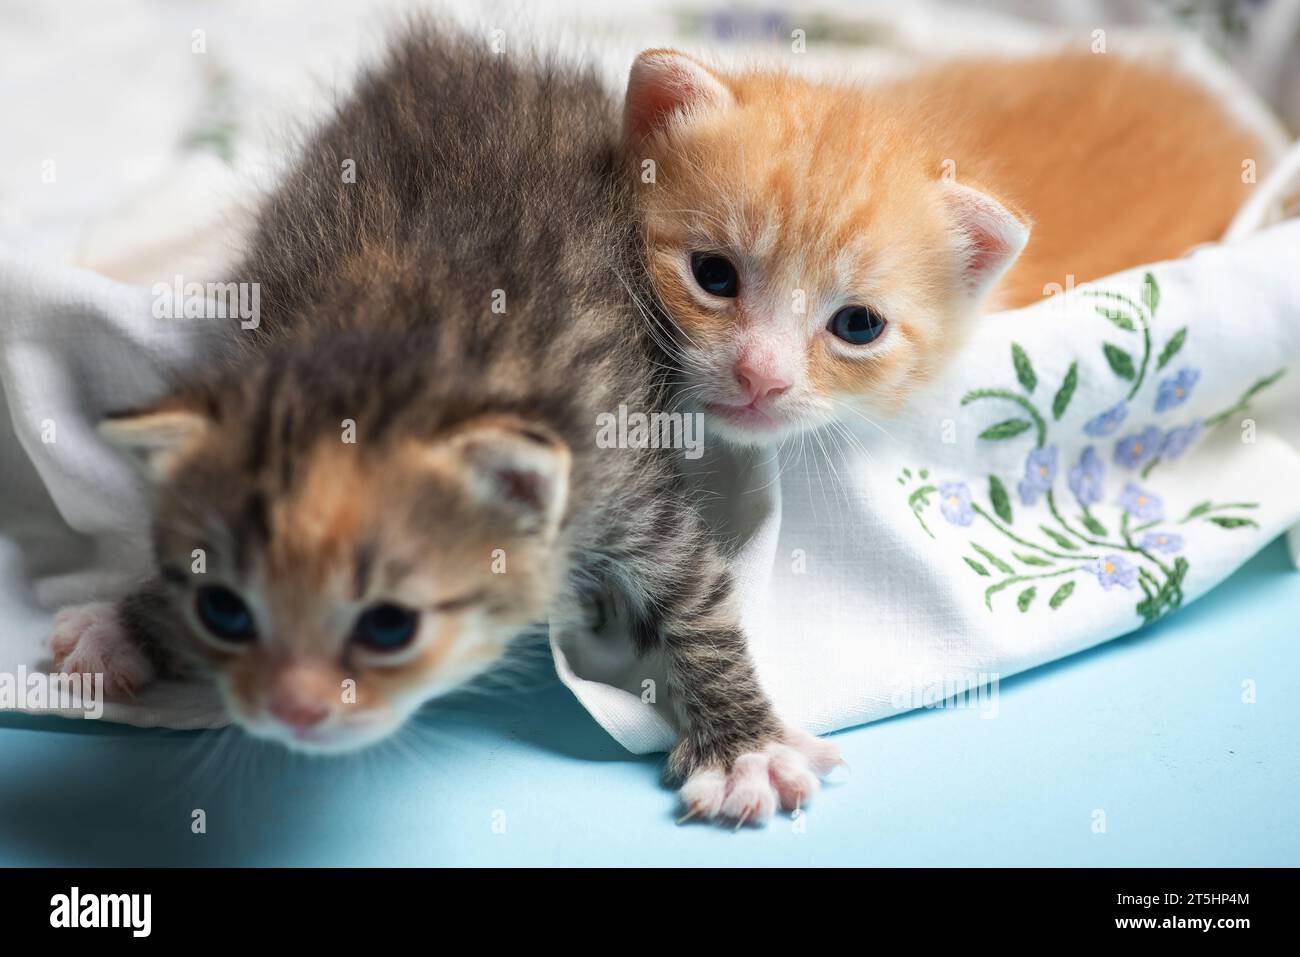 Deux adorables chatons colorés nouveau-nés font leurs premiers pas maladroits dans un panier Banque D'Images